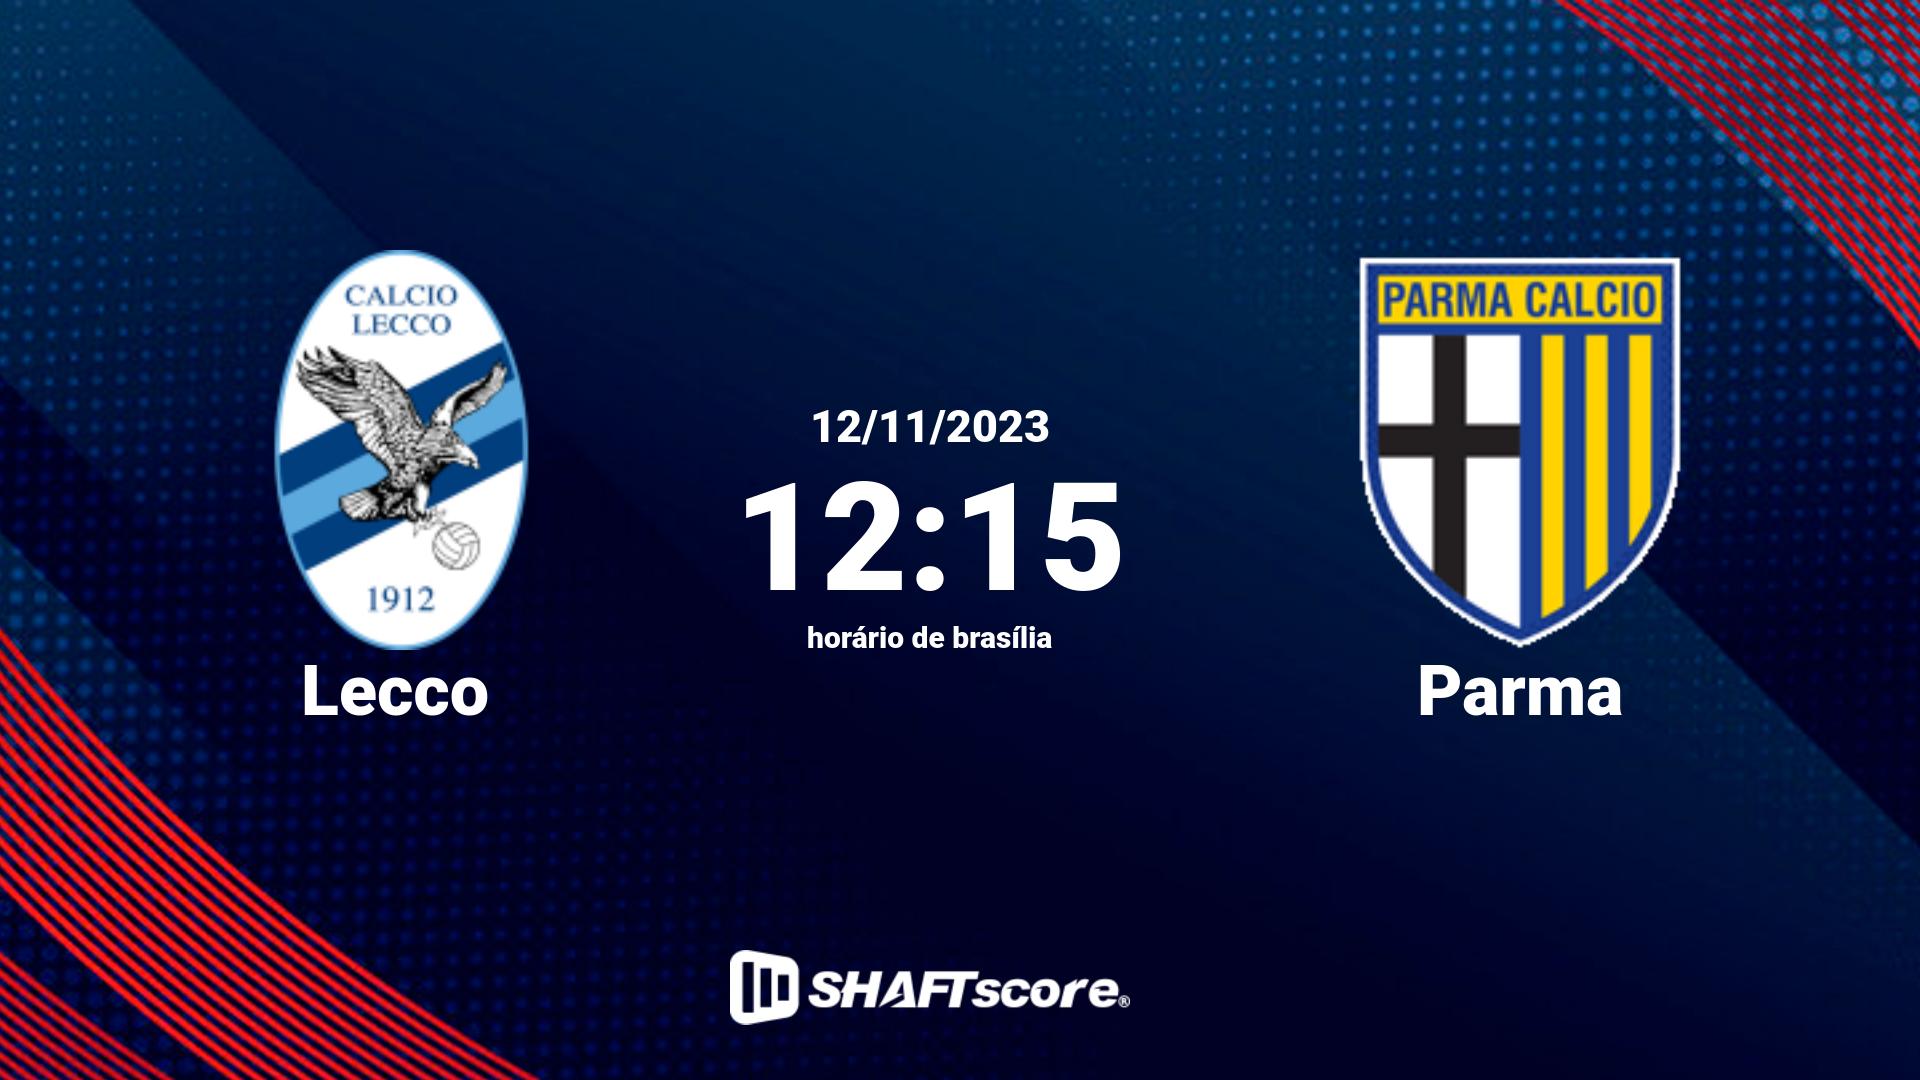 Estatísticas do jogo Lecco vs Parma 12.11 12:15